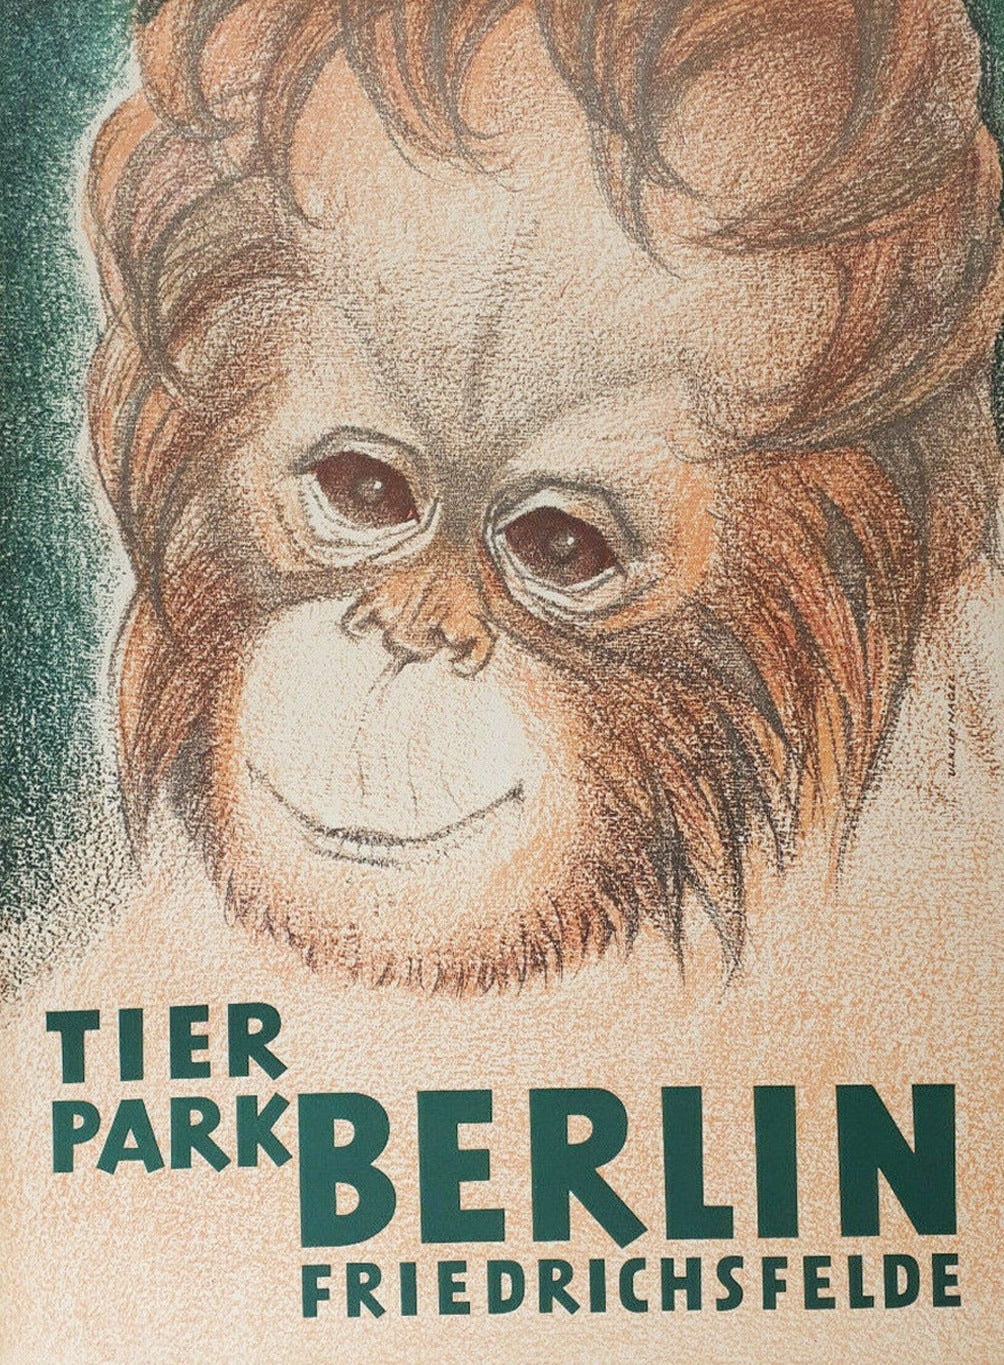 Berlin Tierpark Zoo Friedrichsfelde